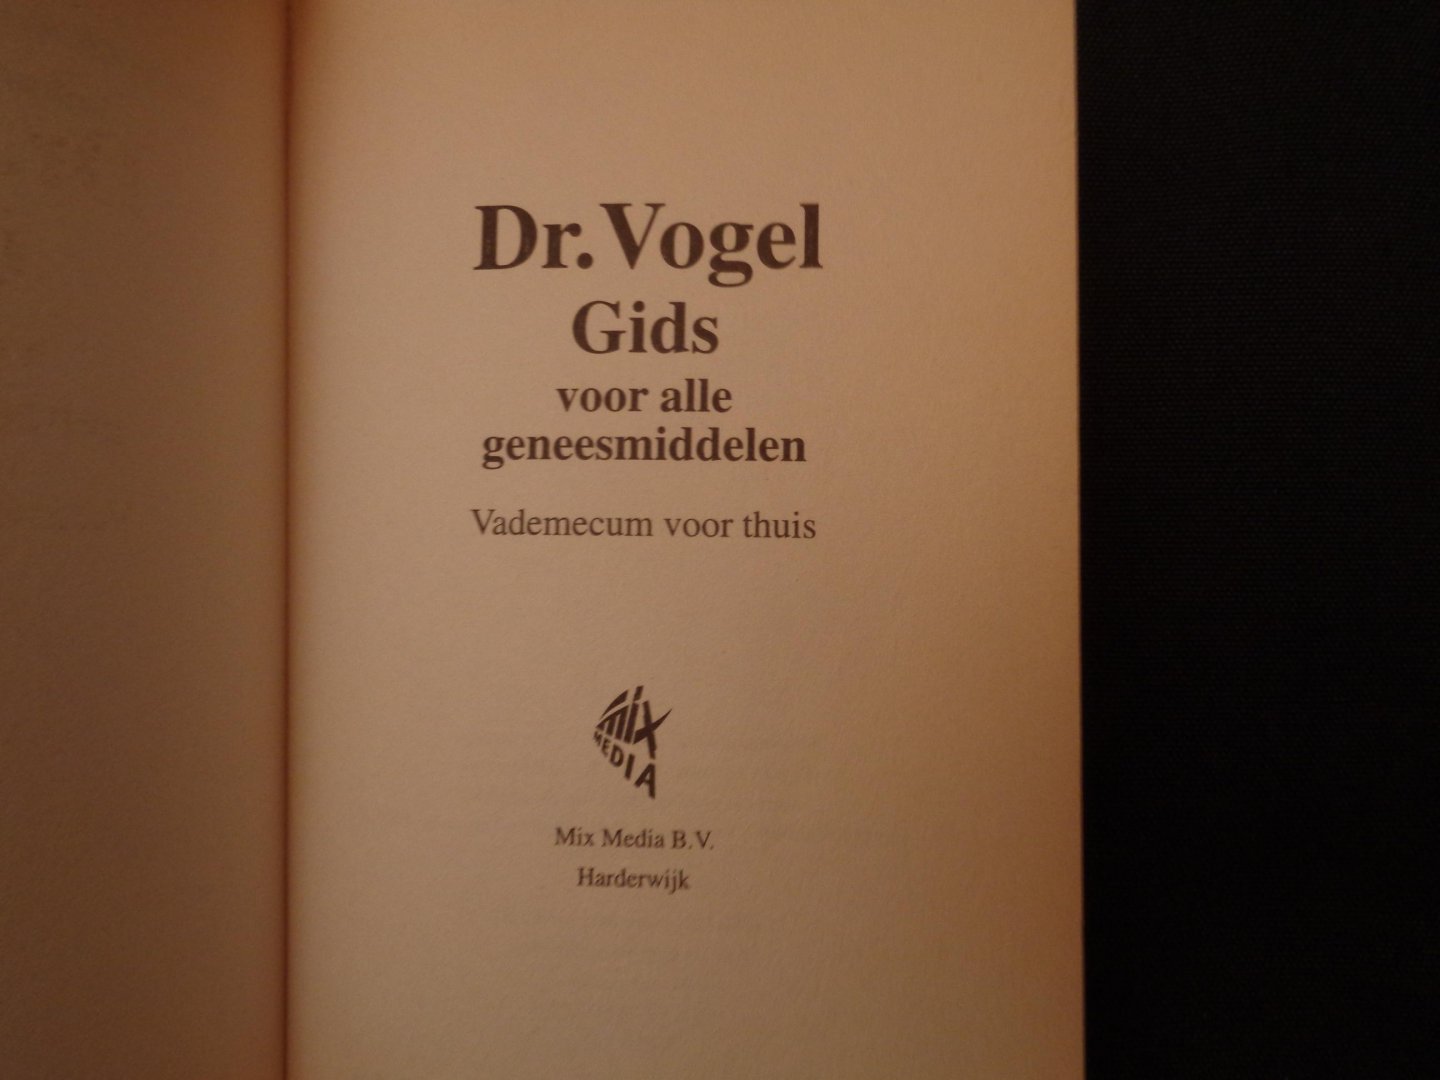 Luijendijk, H. - Dr. Vogel gids voor alle geneesmiddelen / druk 4